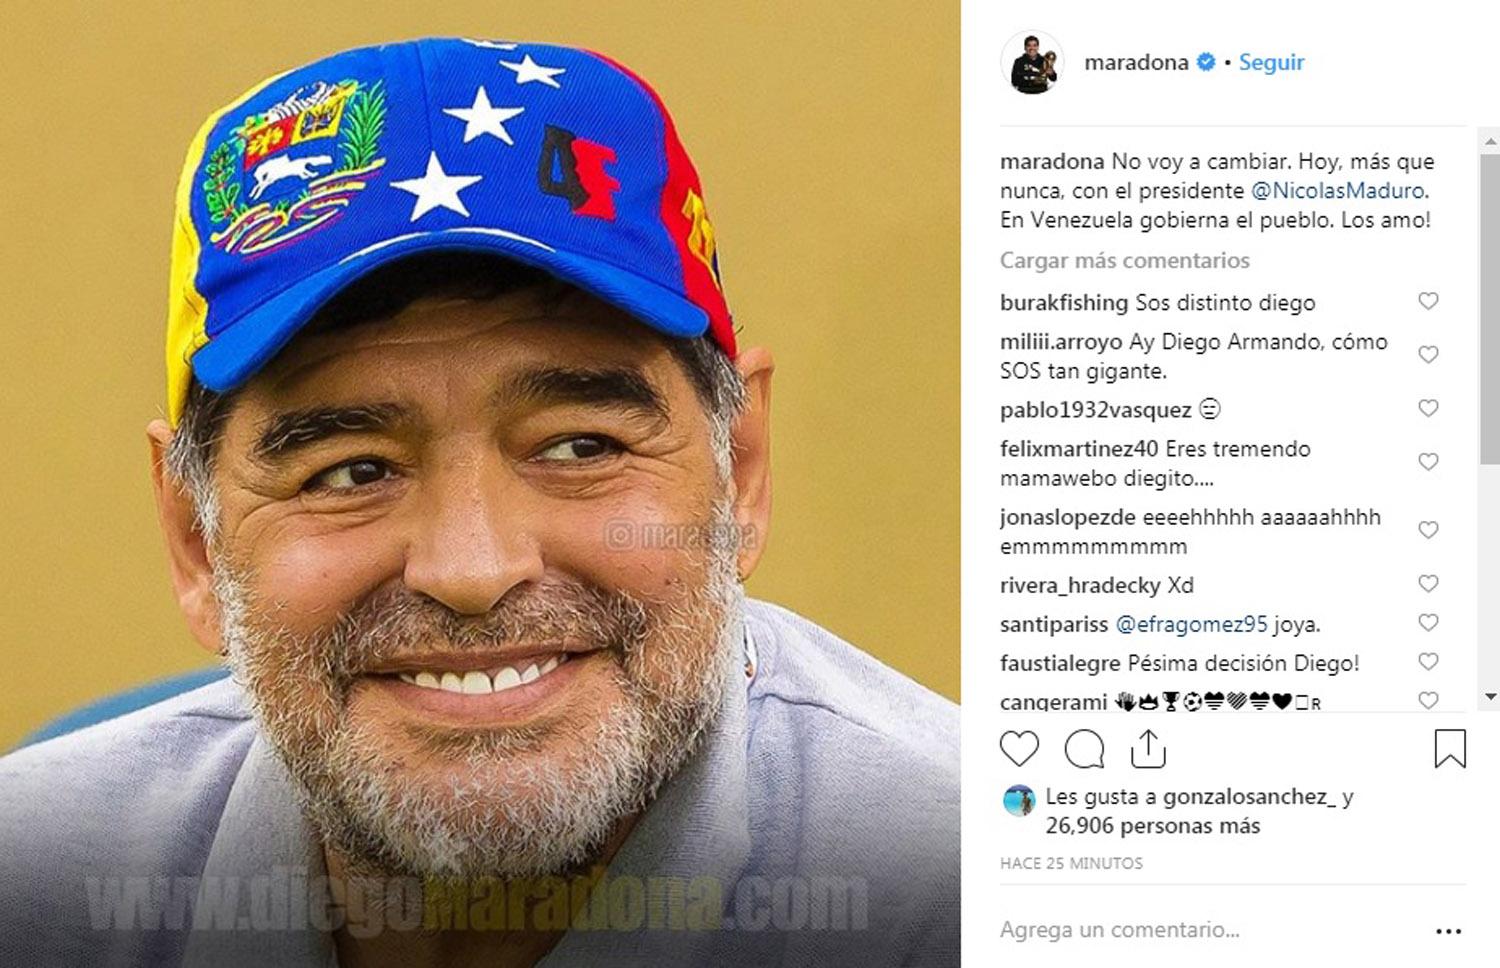 Maradona: hoy más que nunca con Maduro